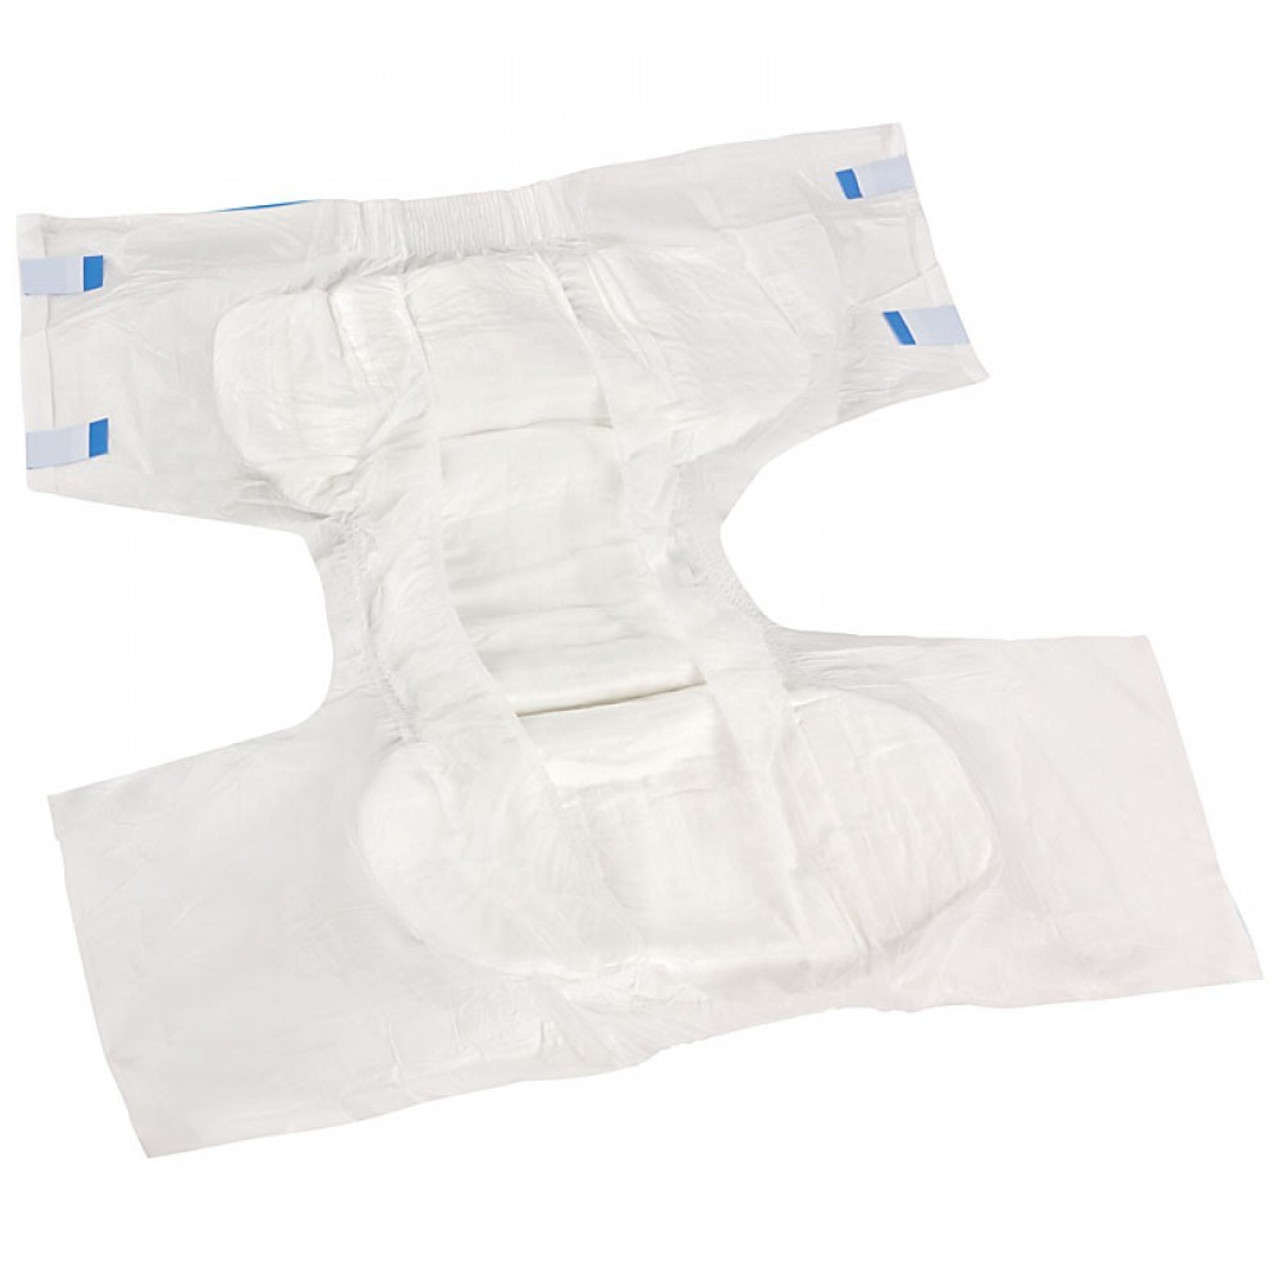 2021 Carelder Summer Use Breathable Adult Diaper for Long Term Bedridden